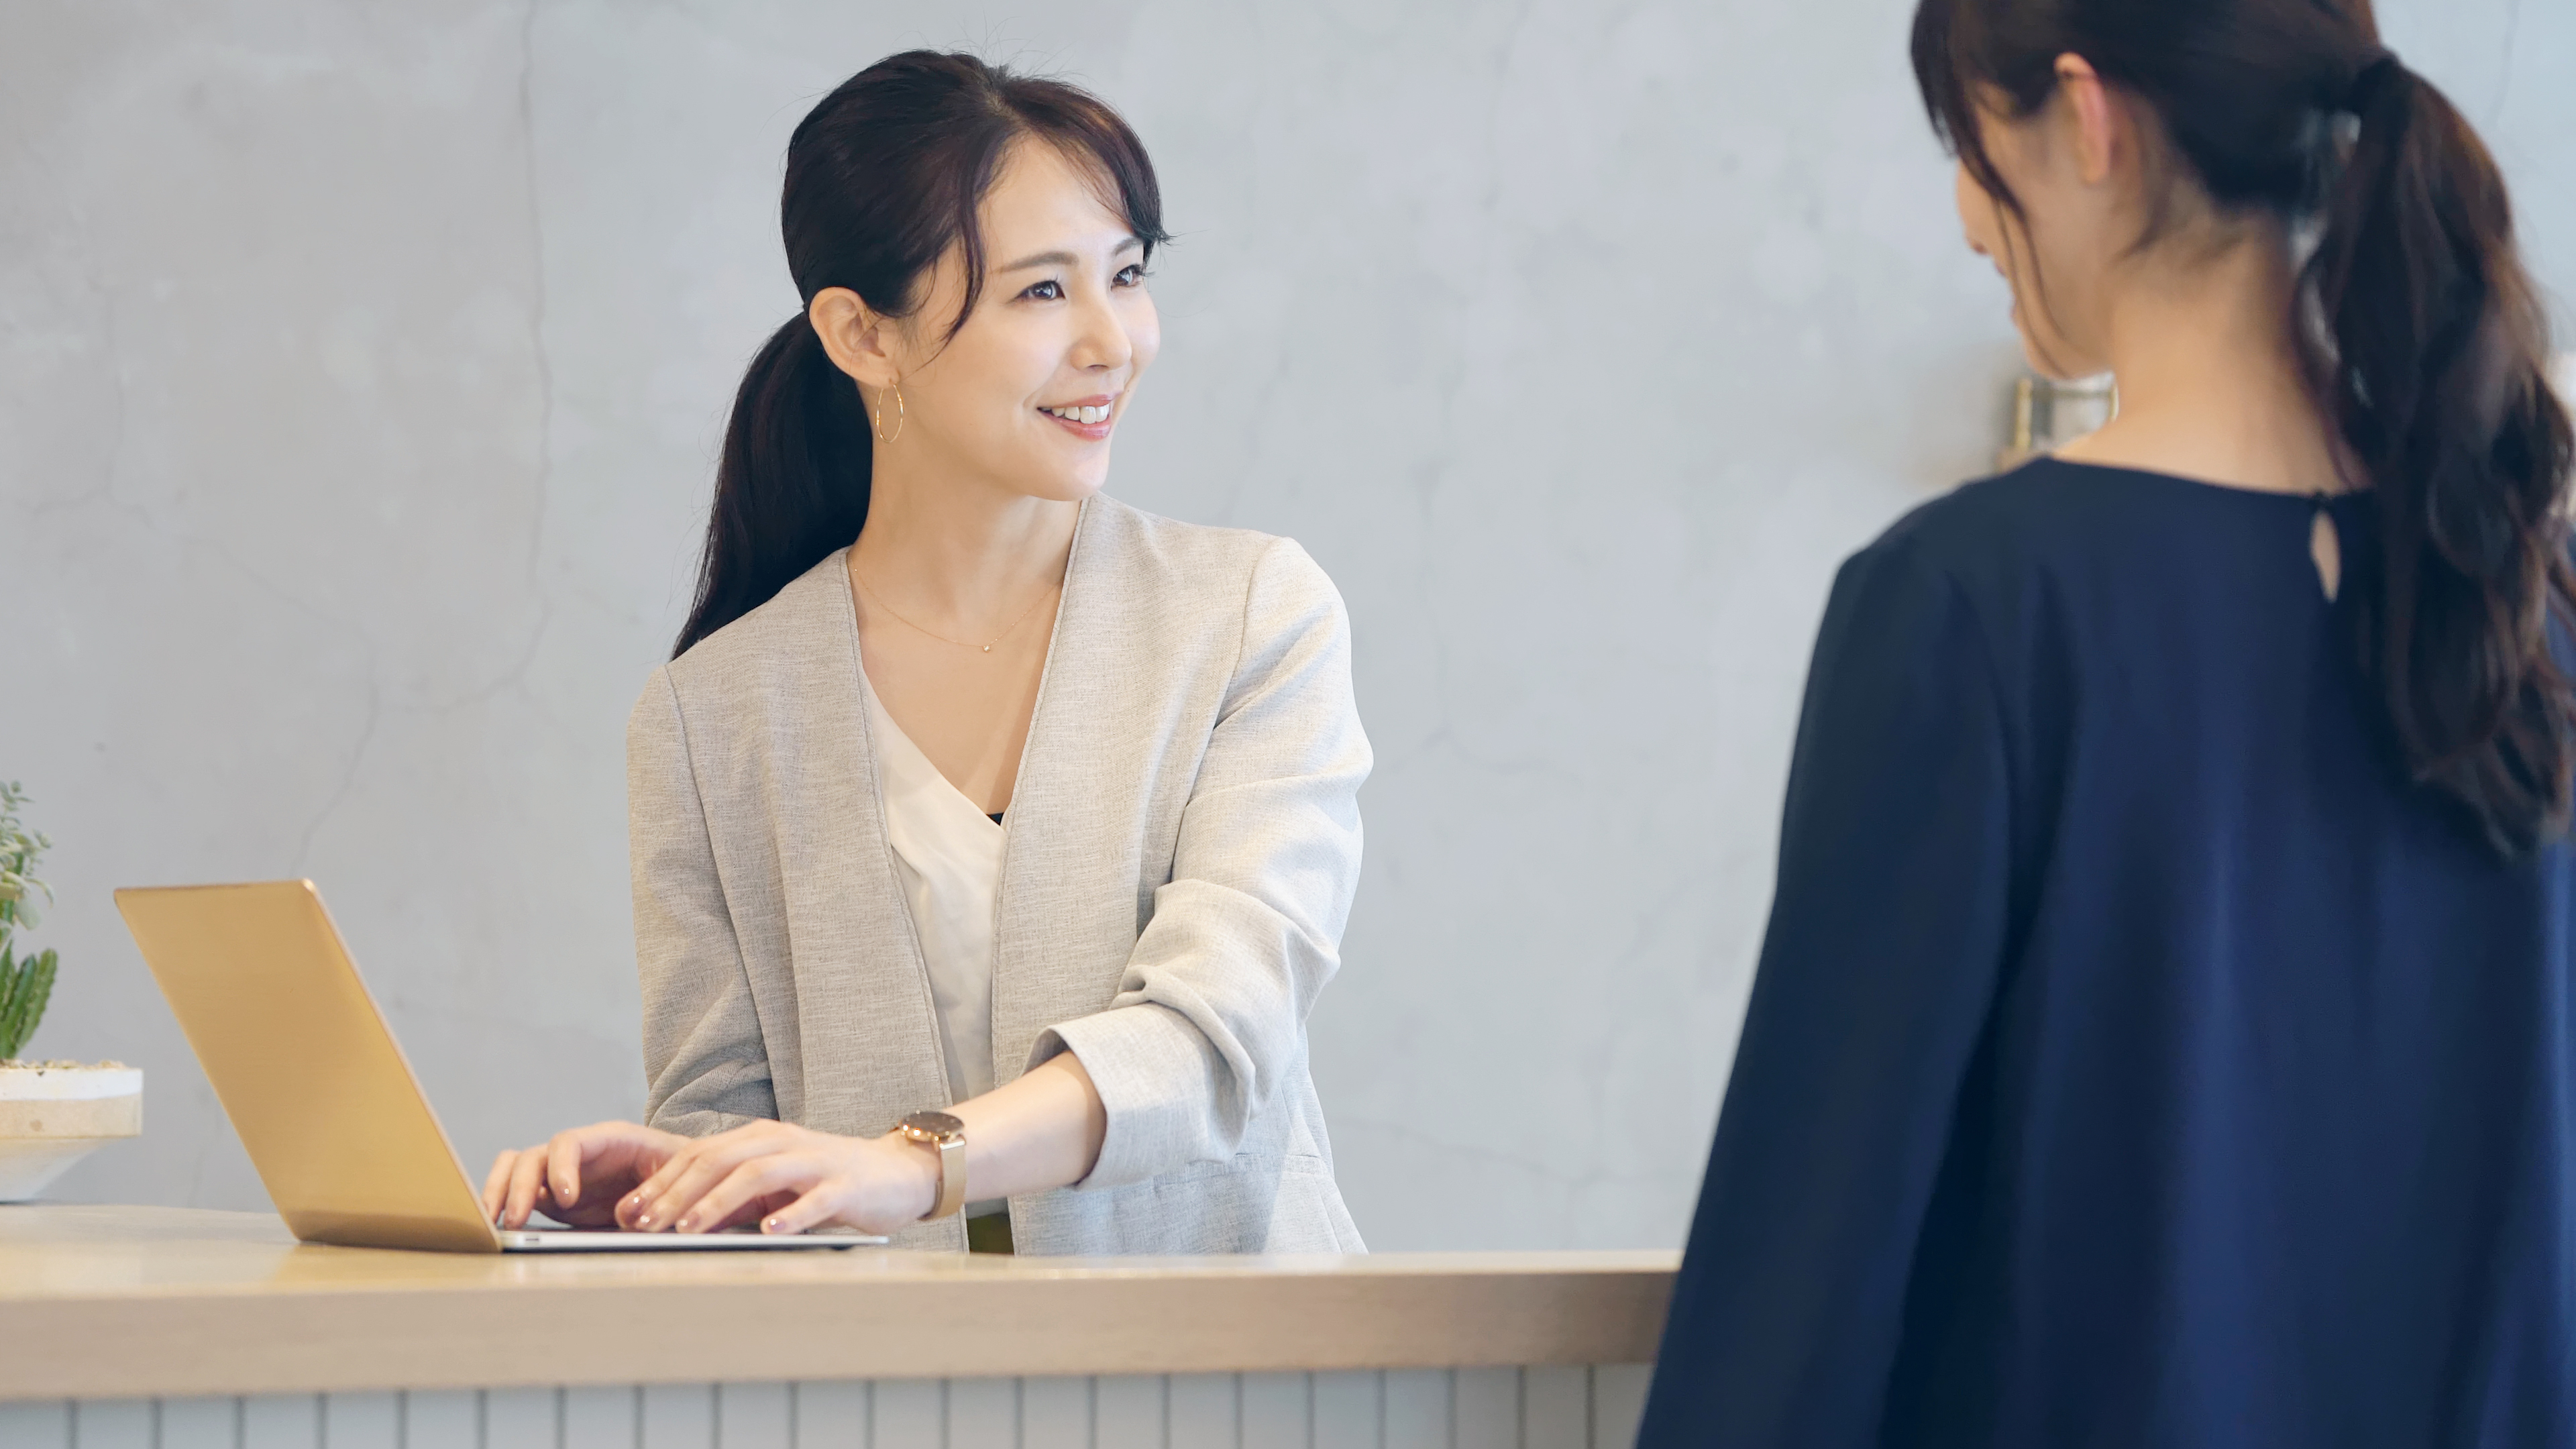 Eine Frau im Gespräch mit einer asiatischen Empfangsdame | Quelle: Shutterstock